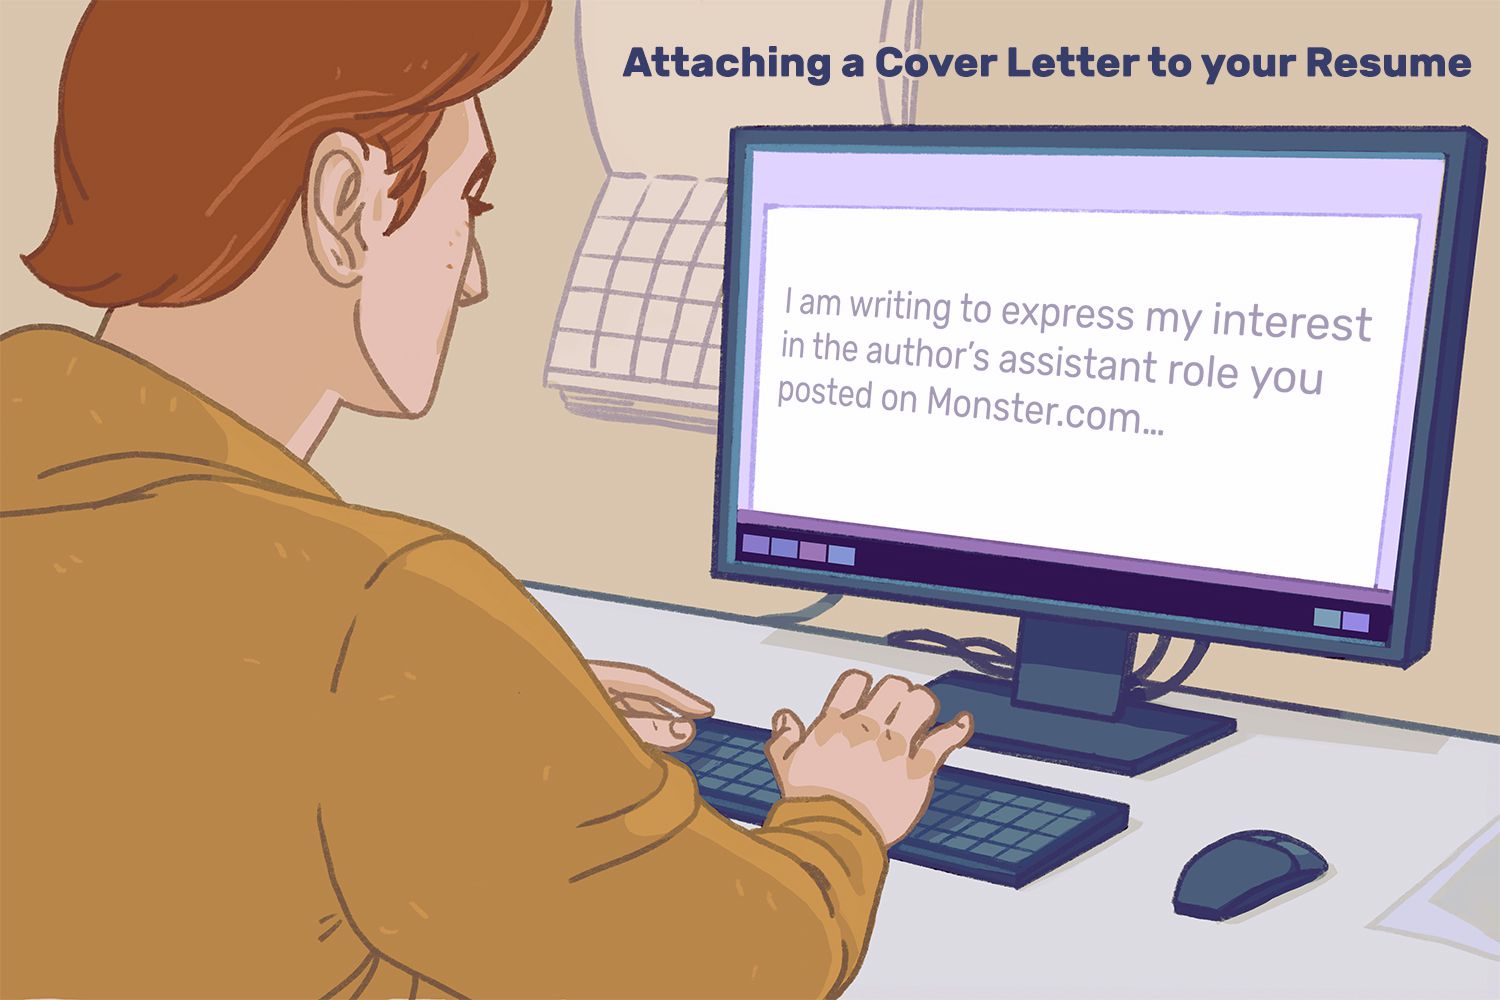 在简历上附上一封求职信。一名男子坐在办公桌前，电脑上显示着一份word文档:“我写这封信是为了表达我对您在Monster.com上发布的作家助理职位的兴趣……